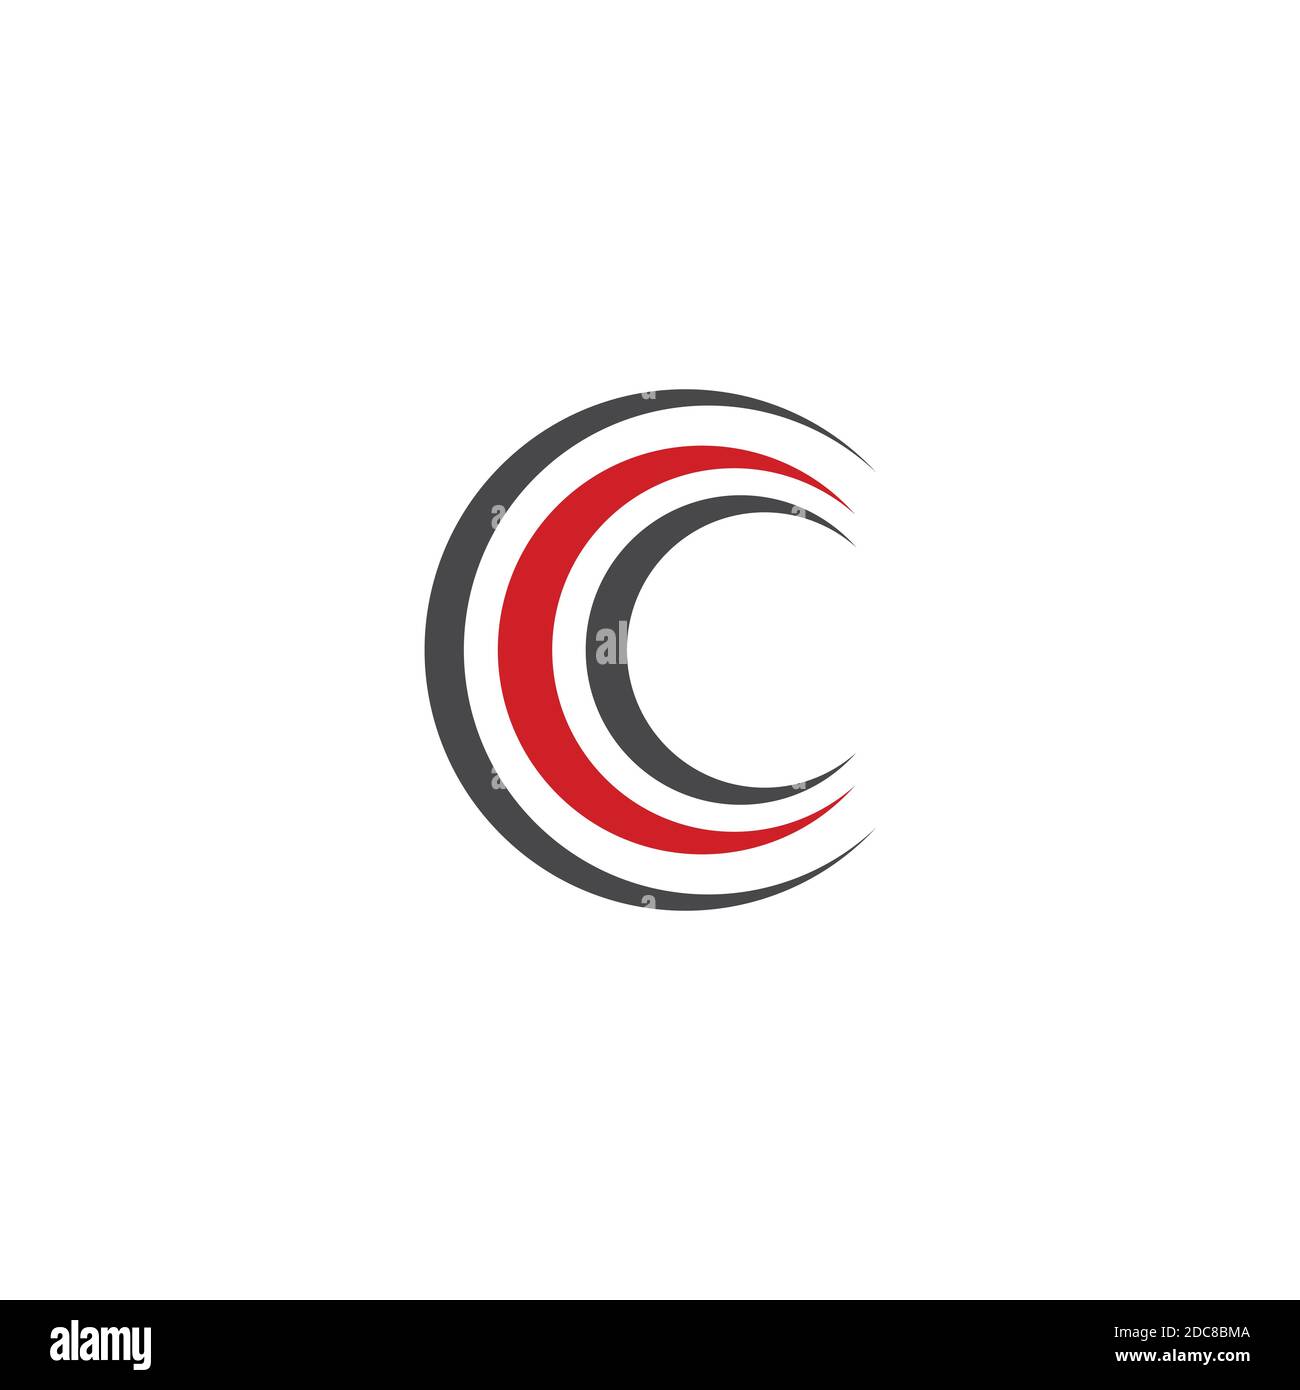 Circle ring logo and symbol vector Stock Vector